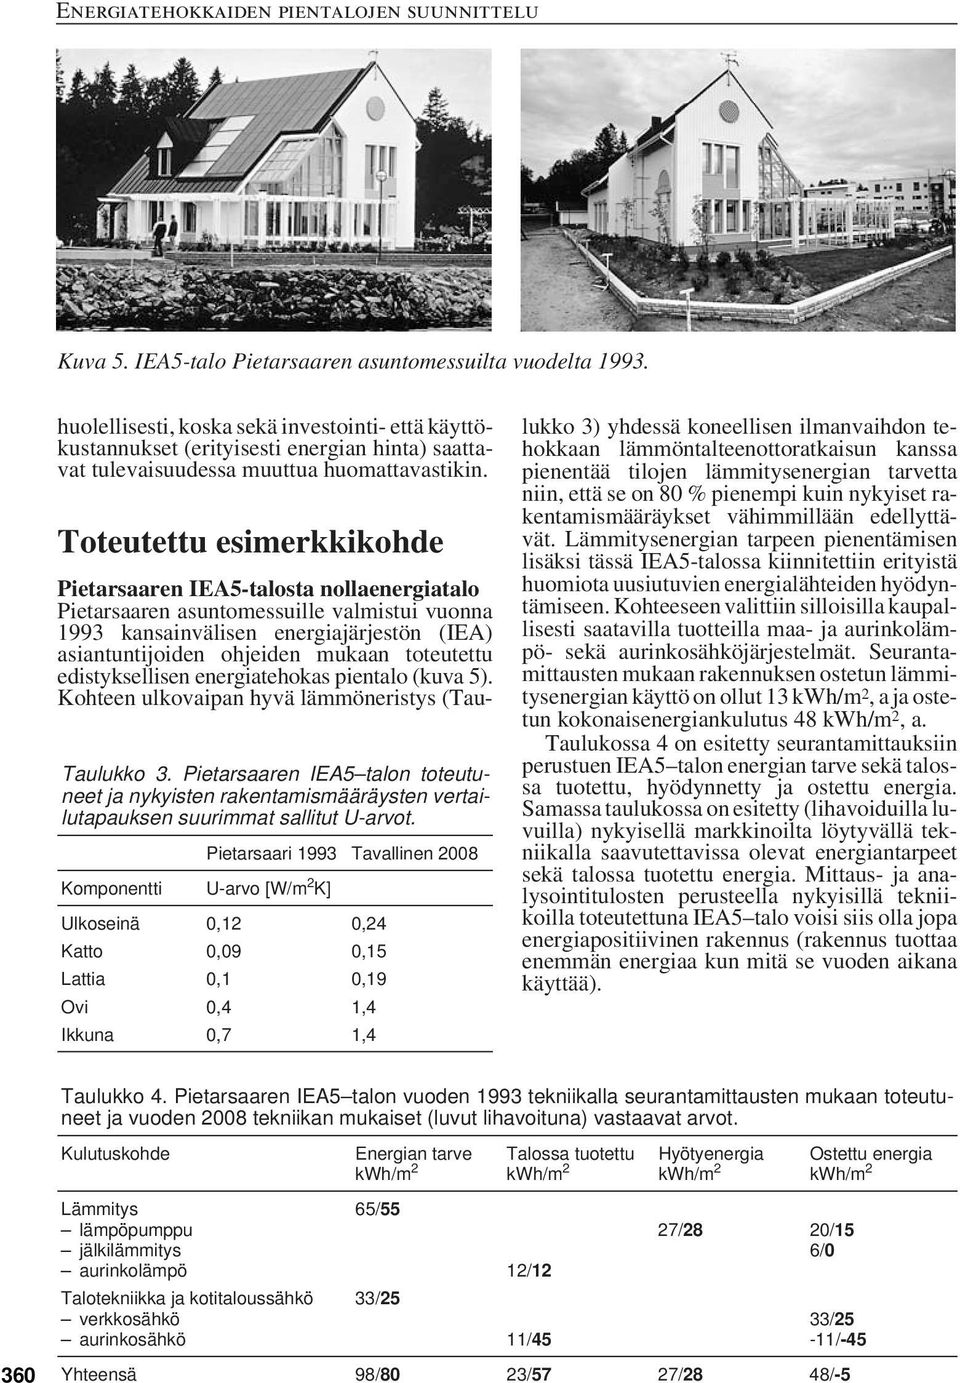 Pietarsaaren IEA5 talon toteutuneet ja nykyisten rakentamismääräysten vertailutapauksen suurimmat sallitut U-arvot.